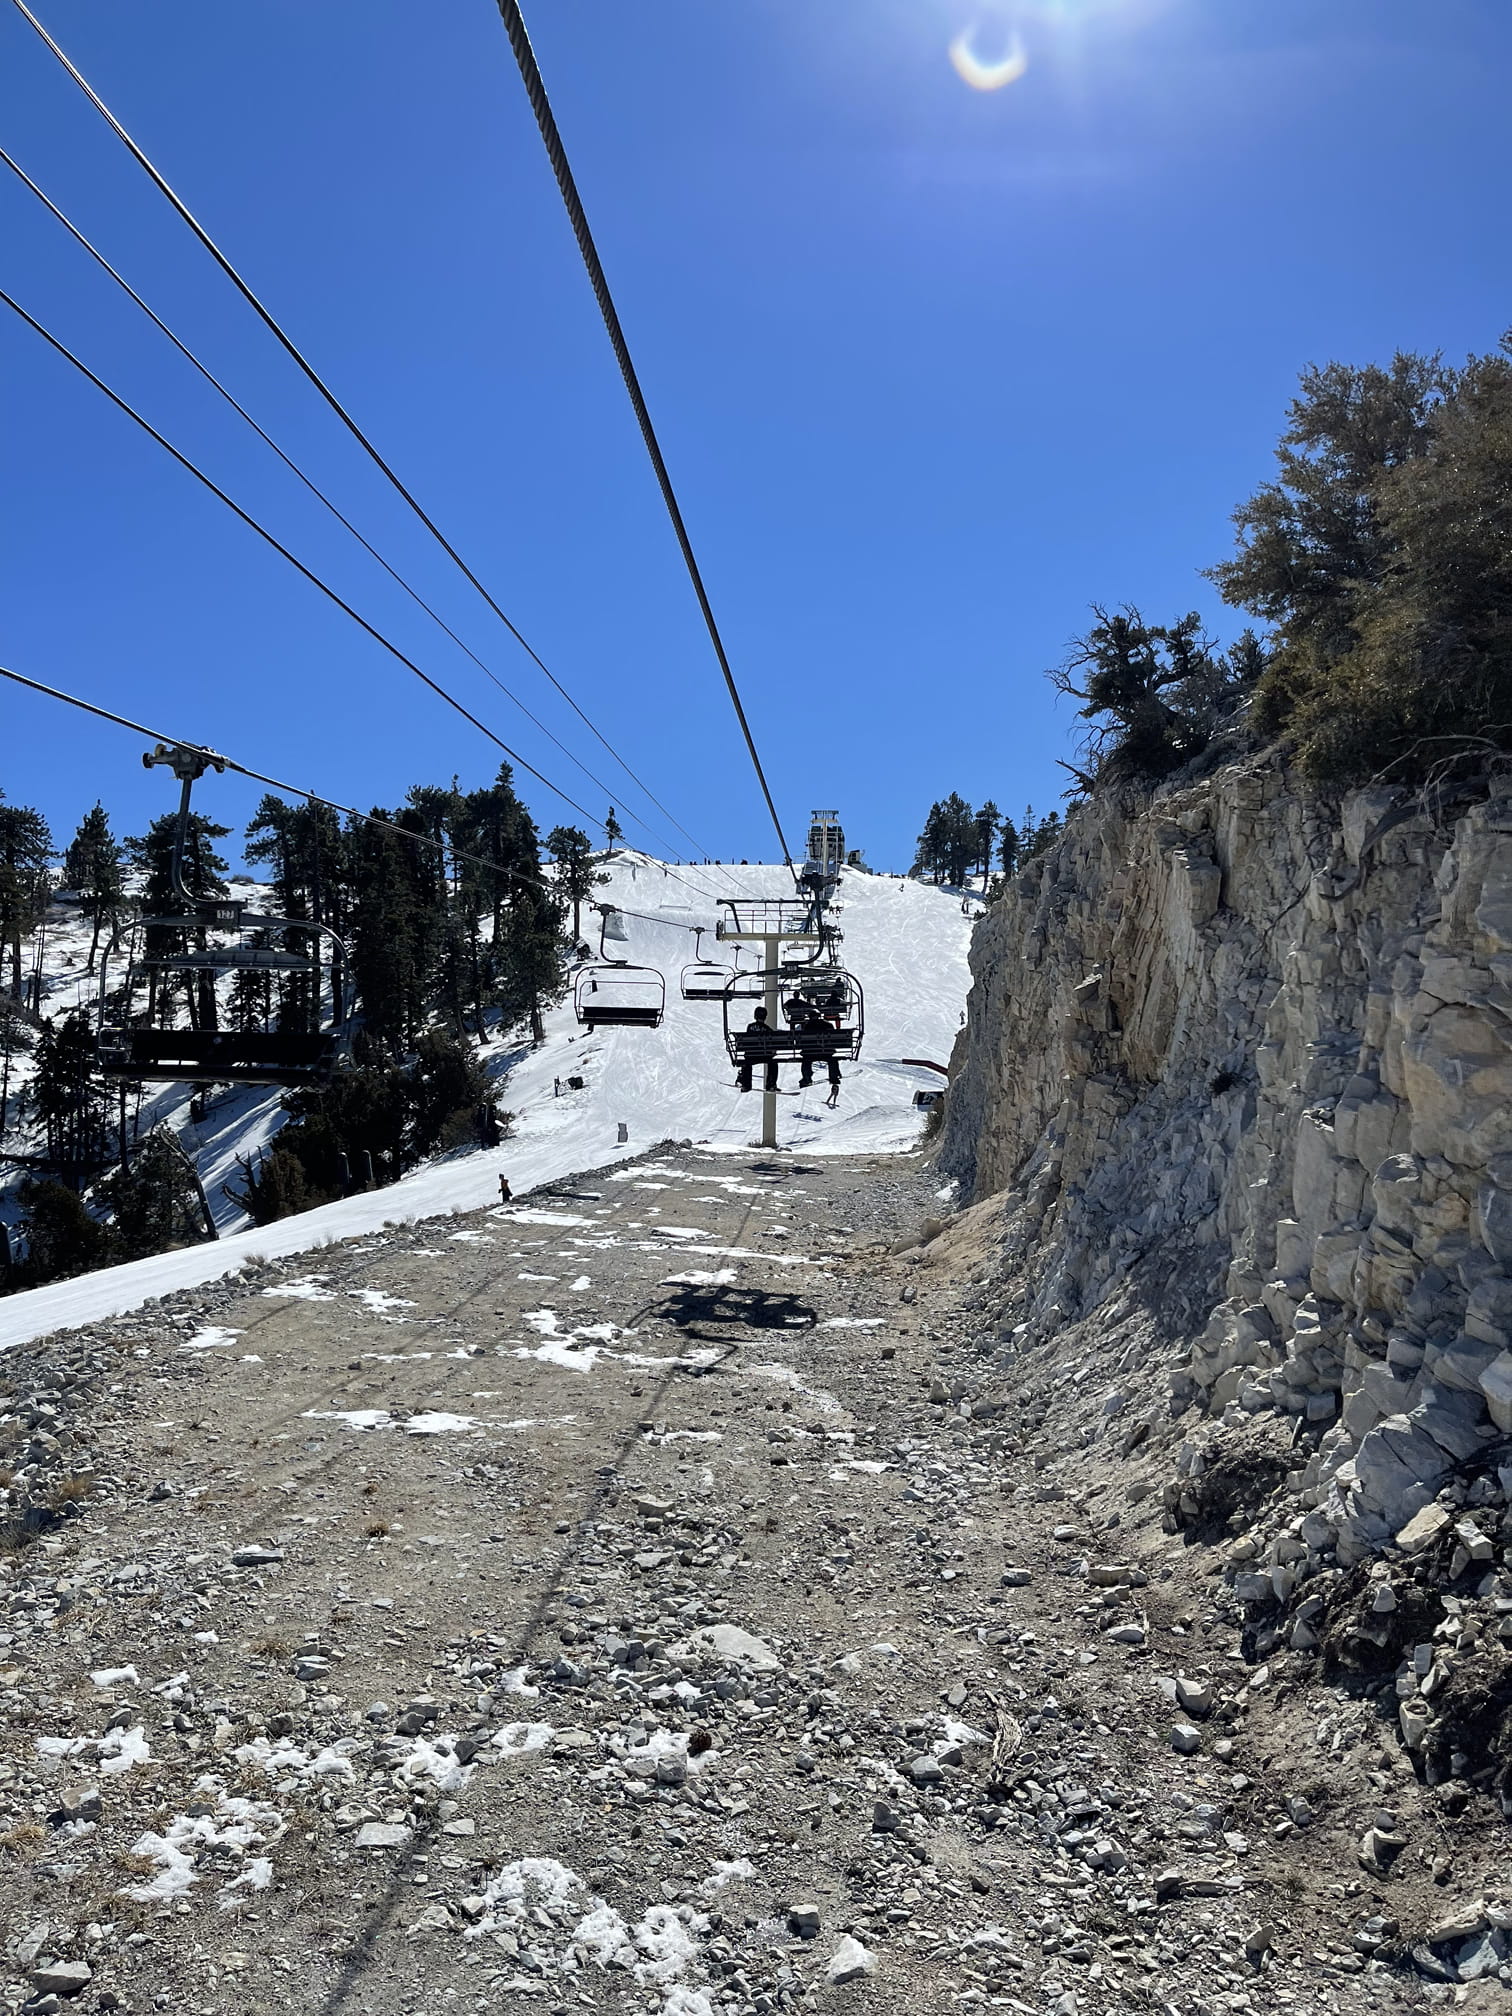 Ski lift at big bear